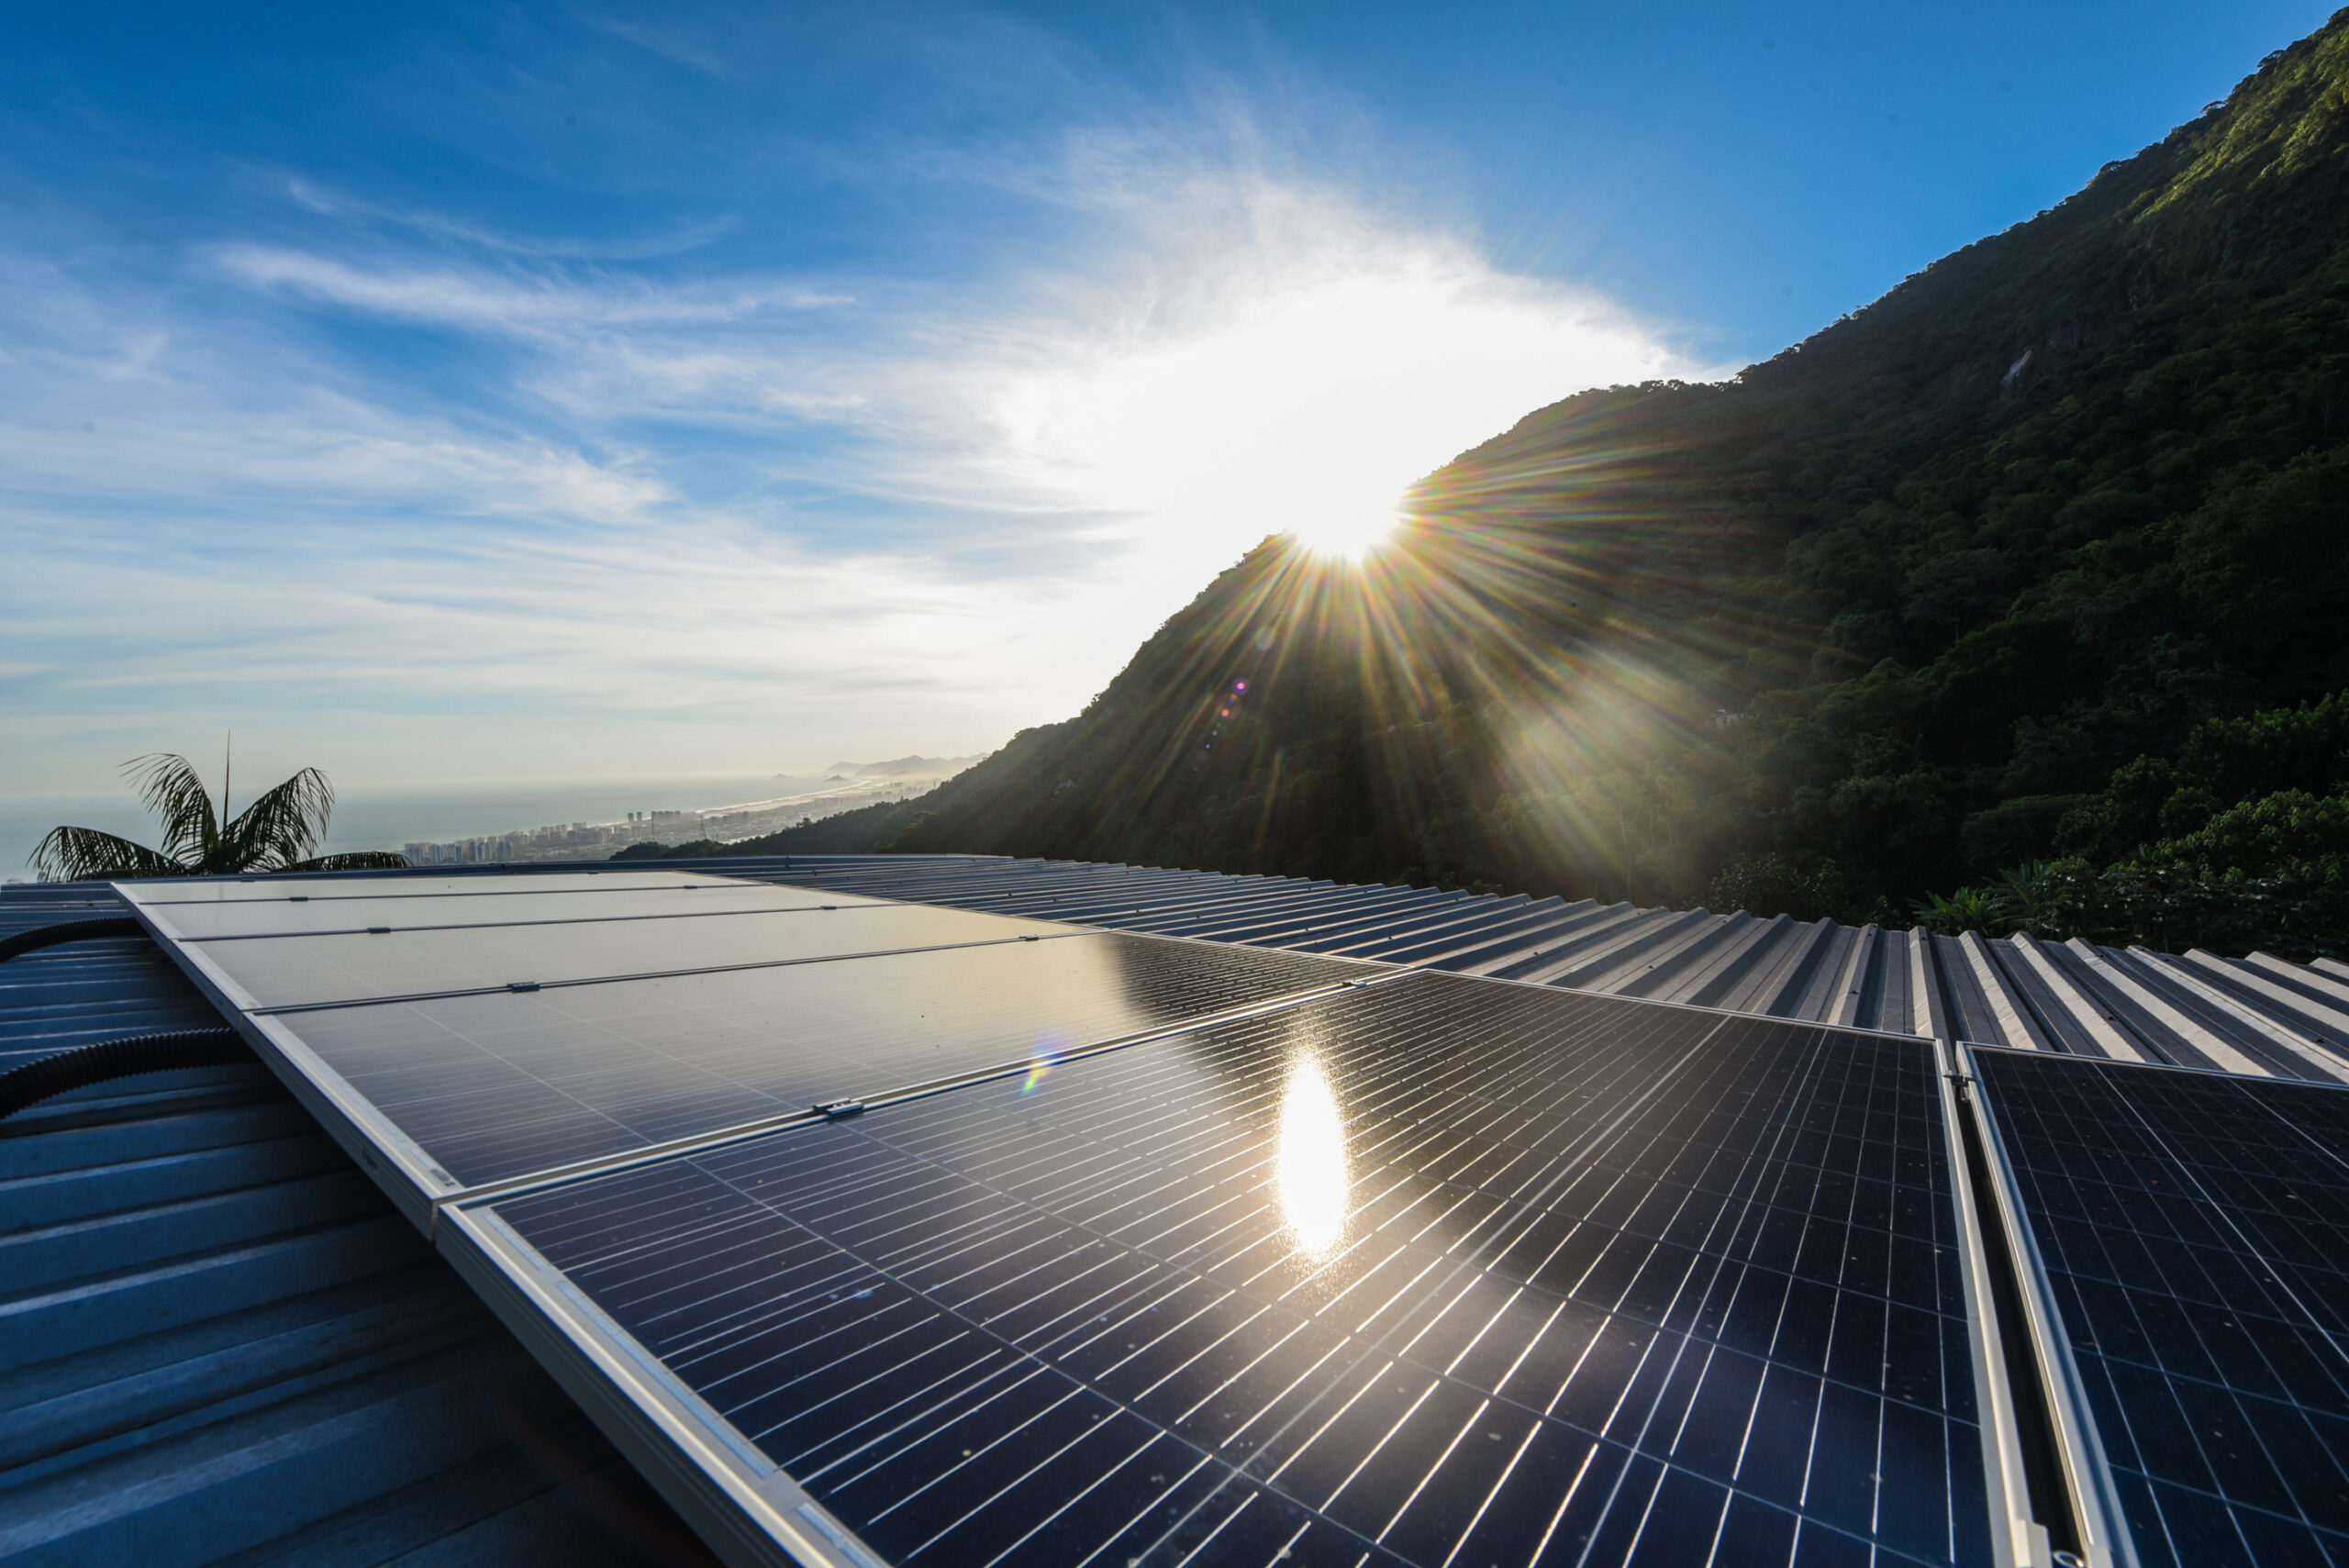 Os painéis solares foram instalados no telhado da sede da Cooperativa Vale Encantado. Foto: Douglas Dobby